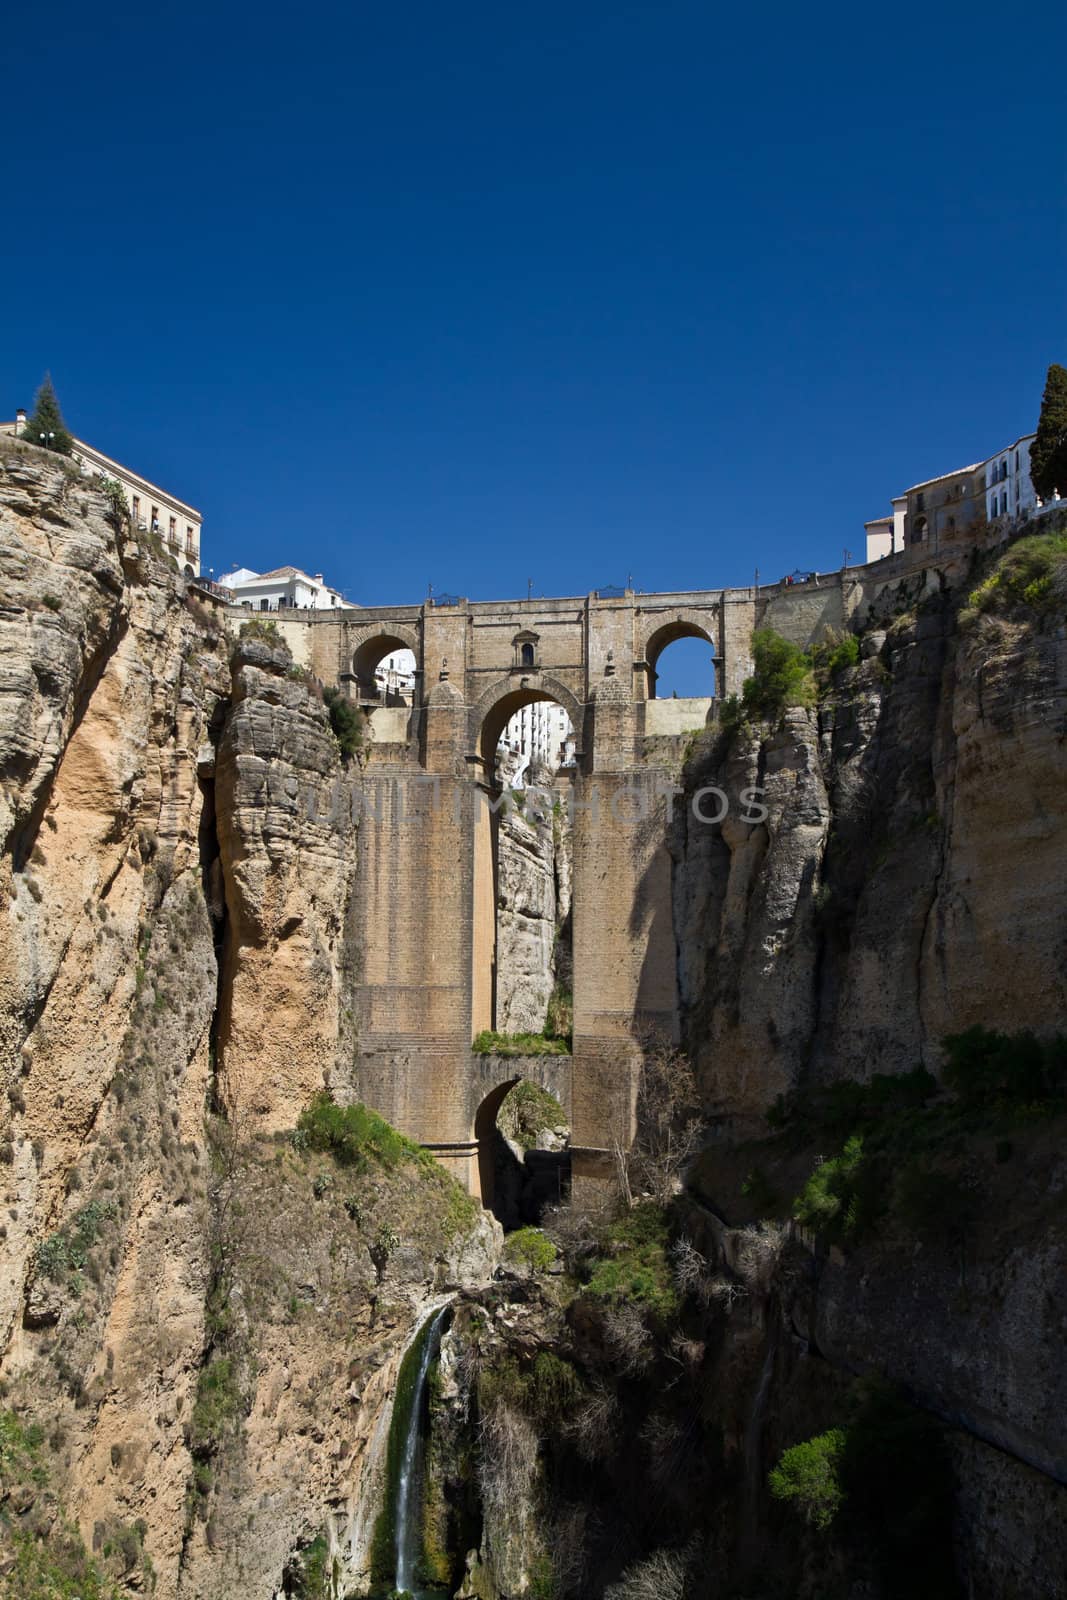 Ronda's new bridge in spring. South Spain.